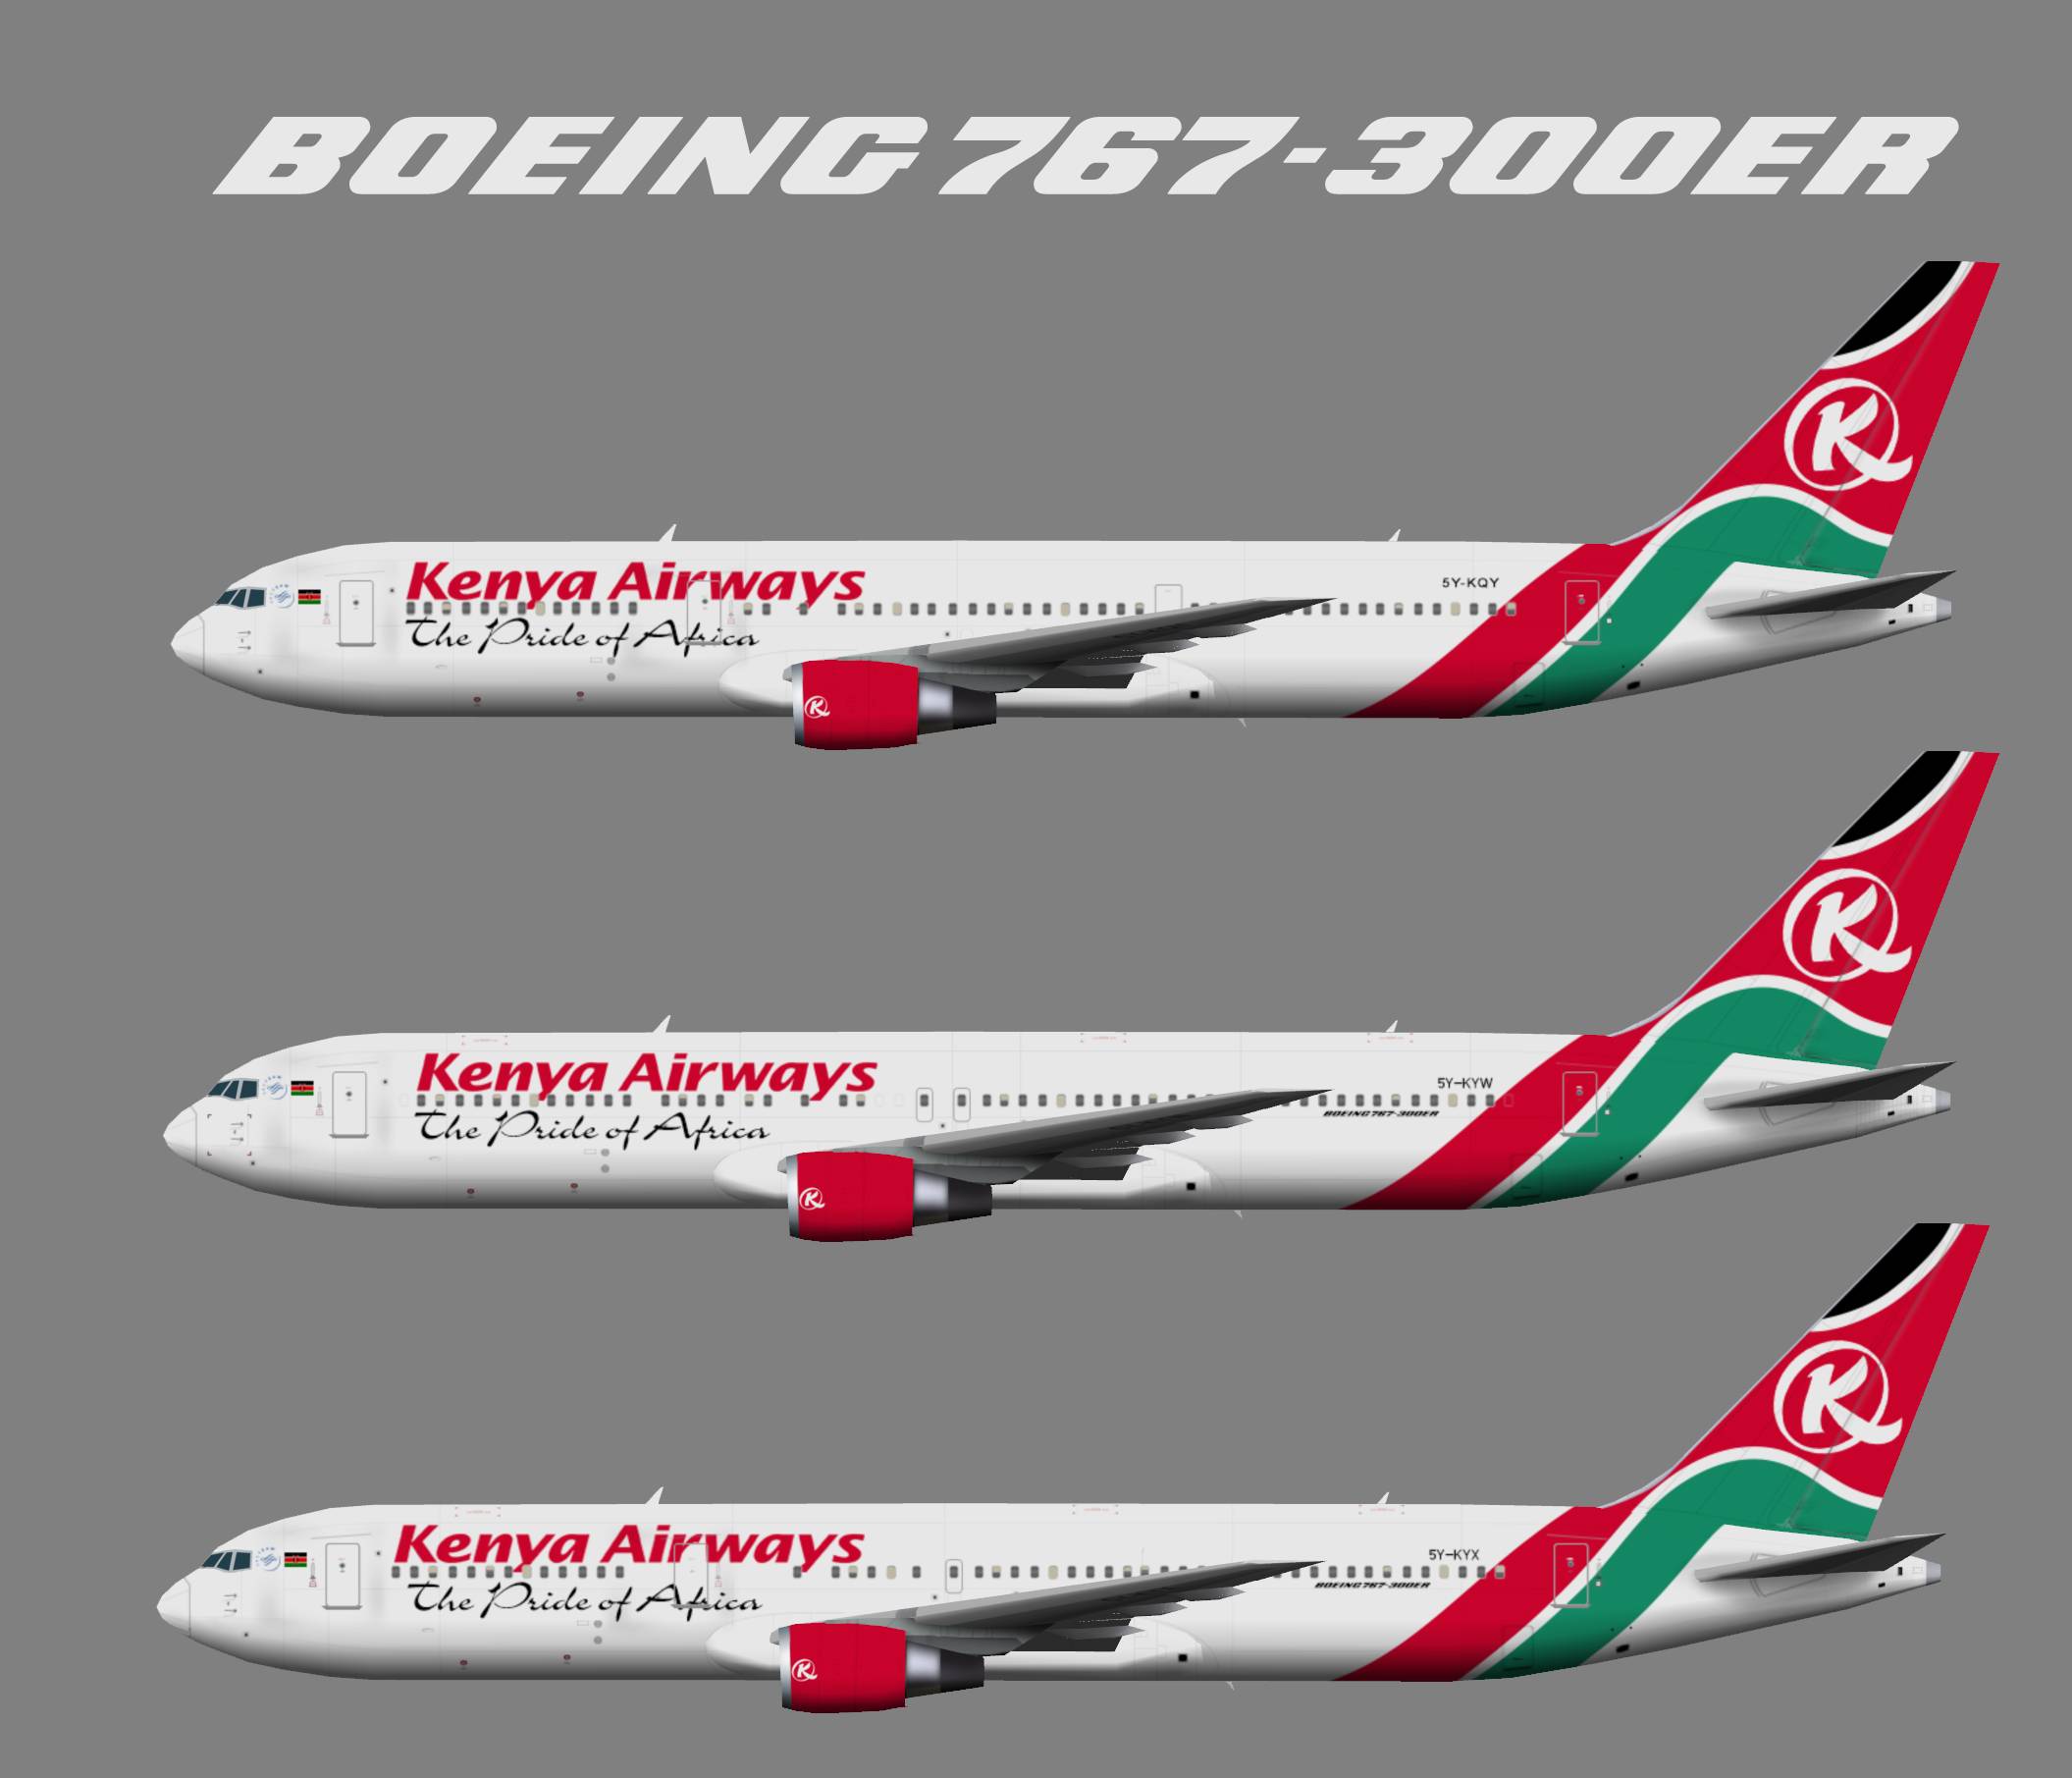 Kenya airways (кения эйрвейз): информация об авиакомпании, какие услуги предоставляют, какова репутация